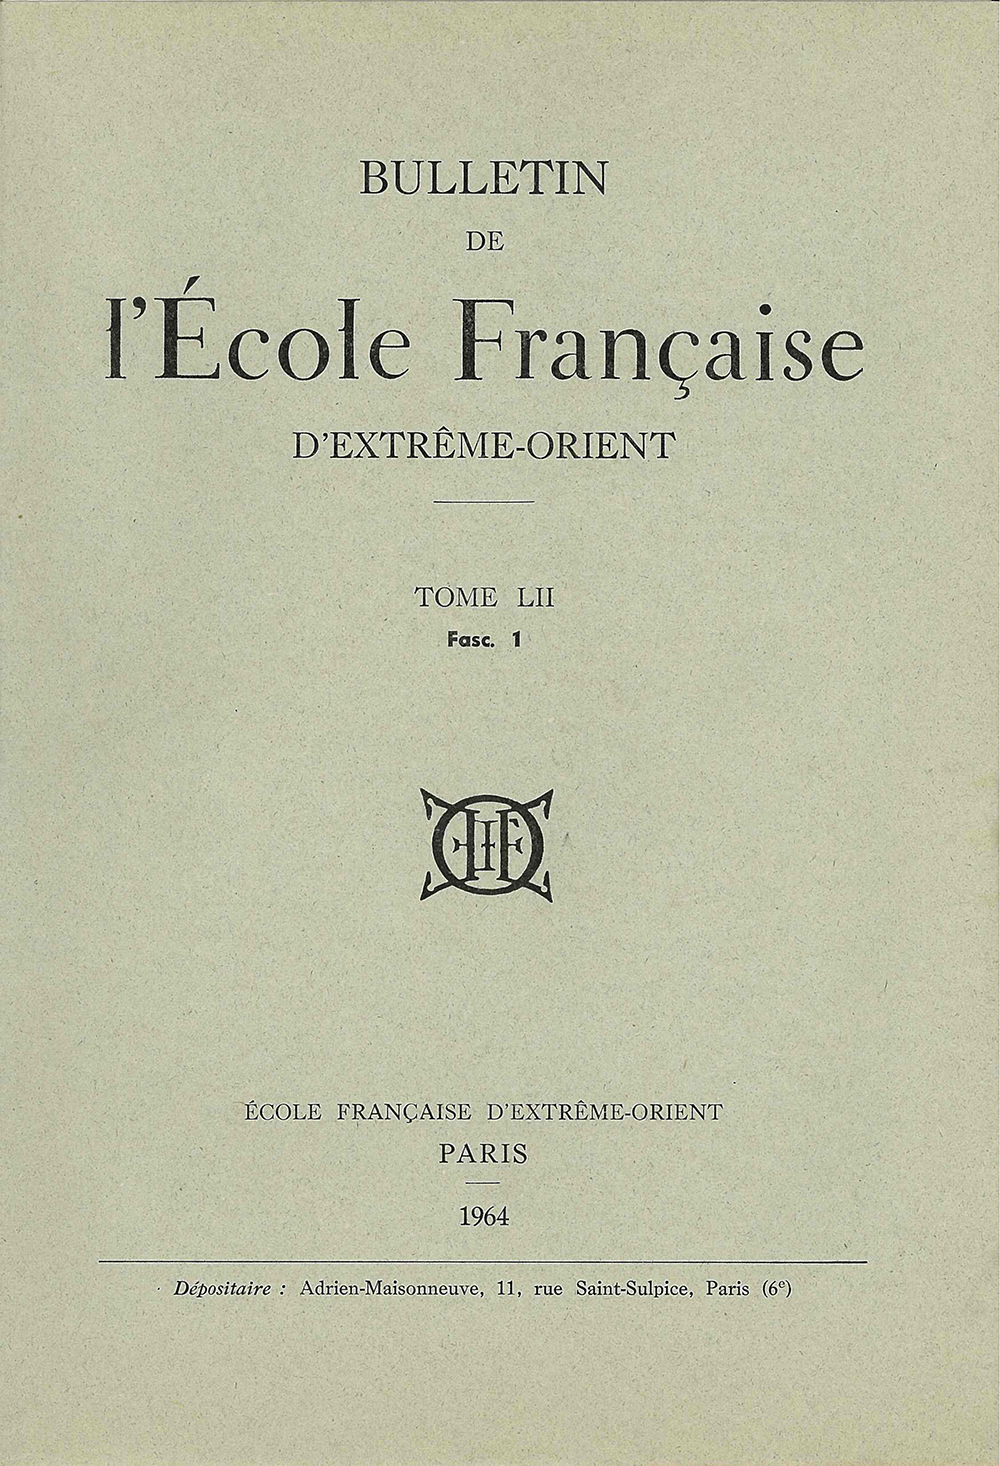 Bulletin de l'Ecole française d'Extrême-Orient 52 (1964)